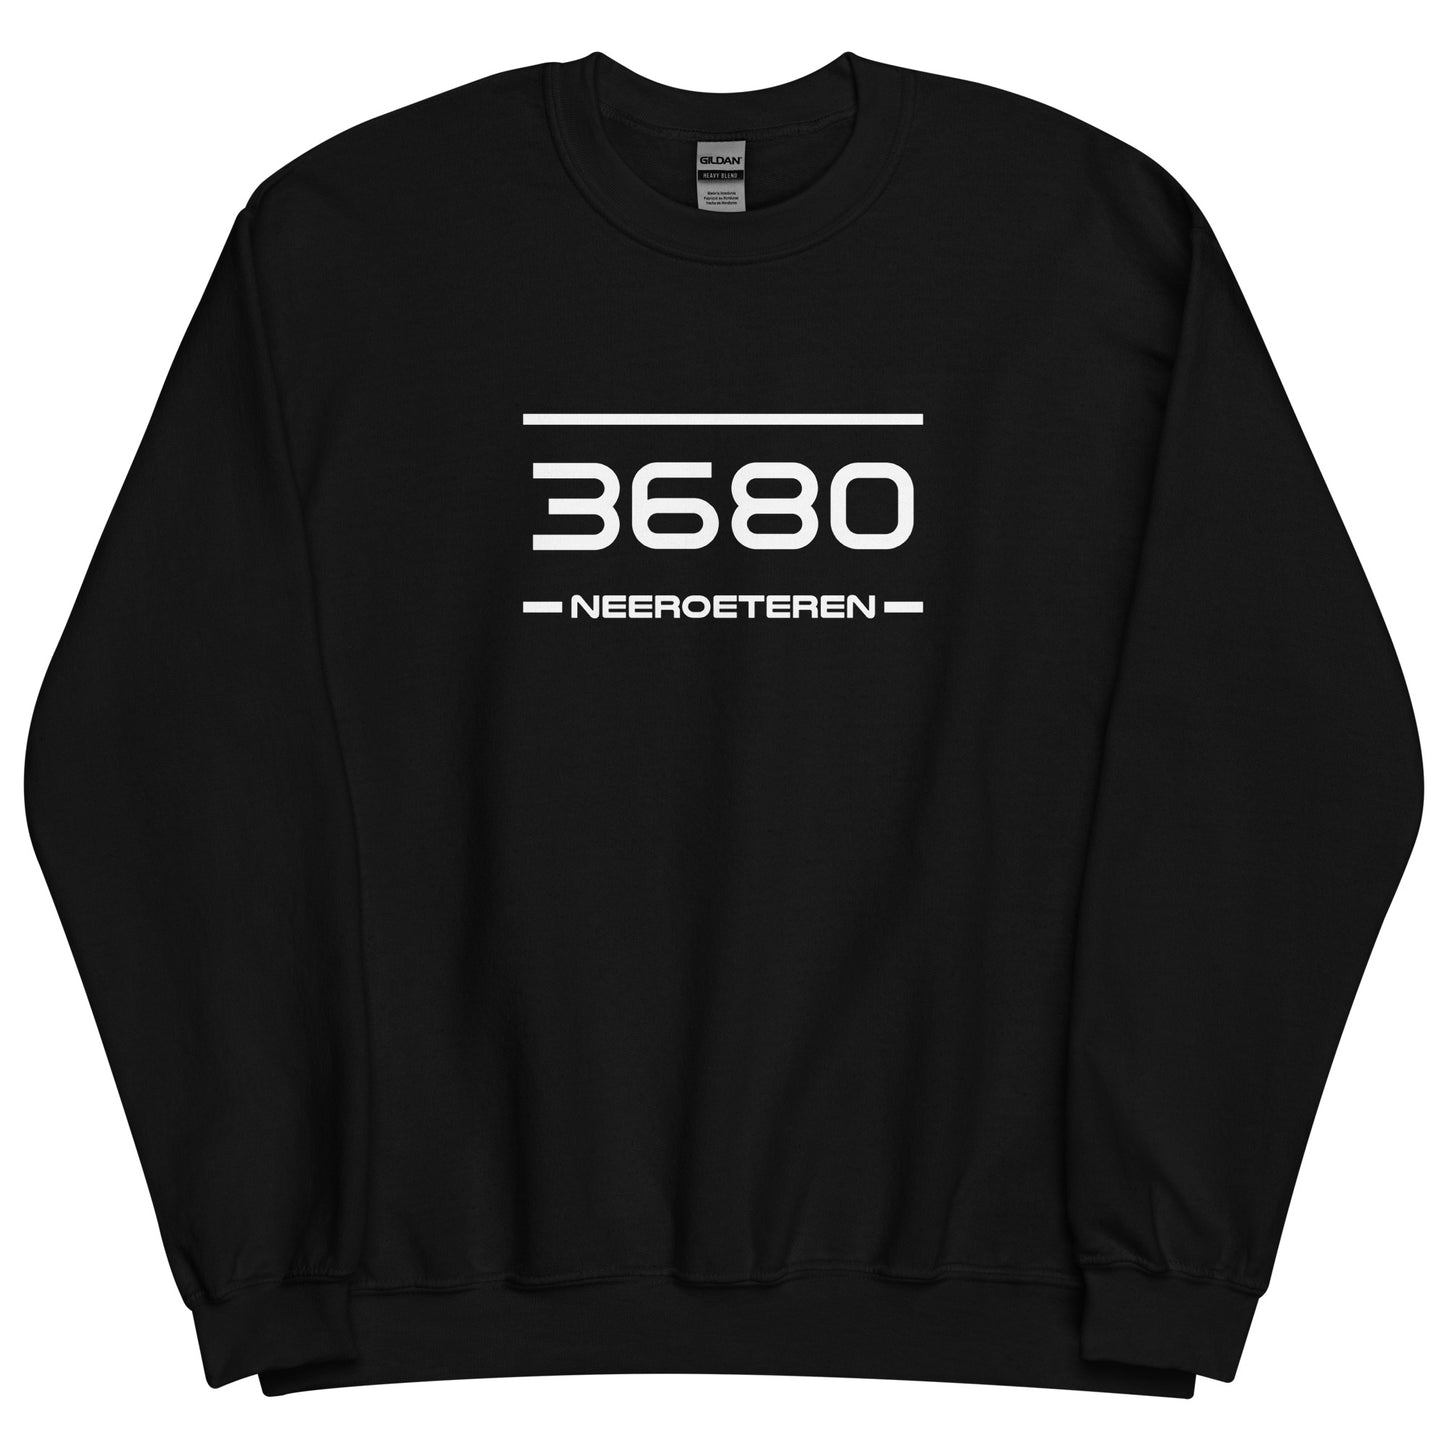 Sweater - 3680 - Neeroeteren (M/V)